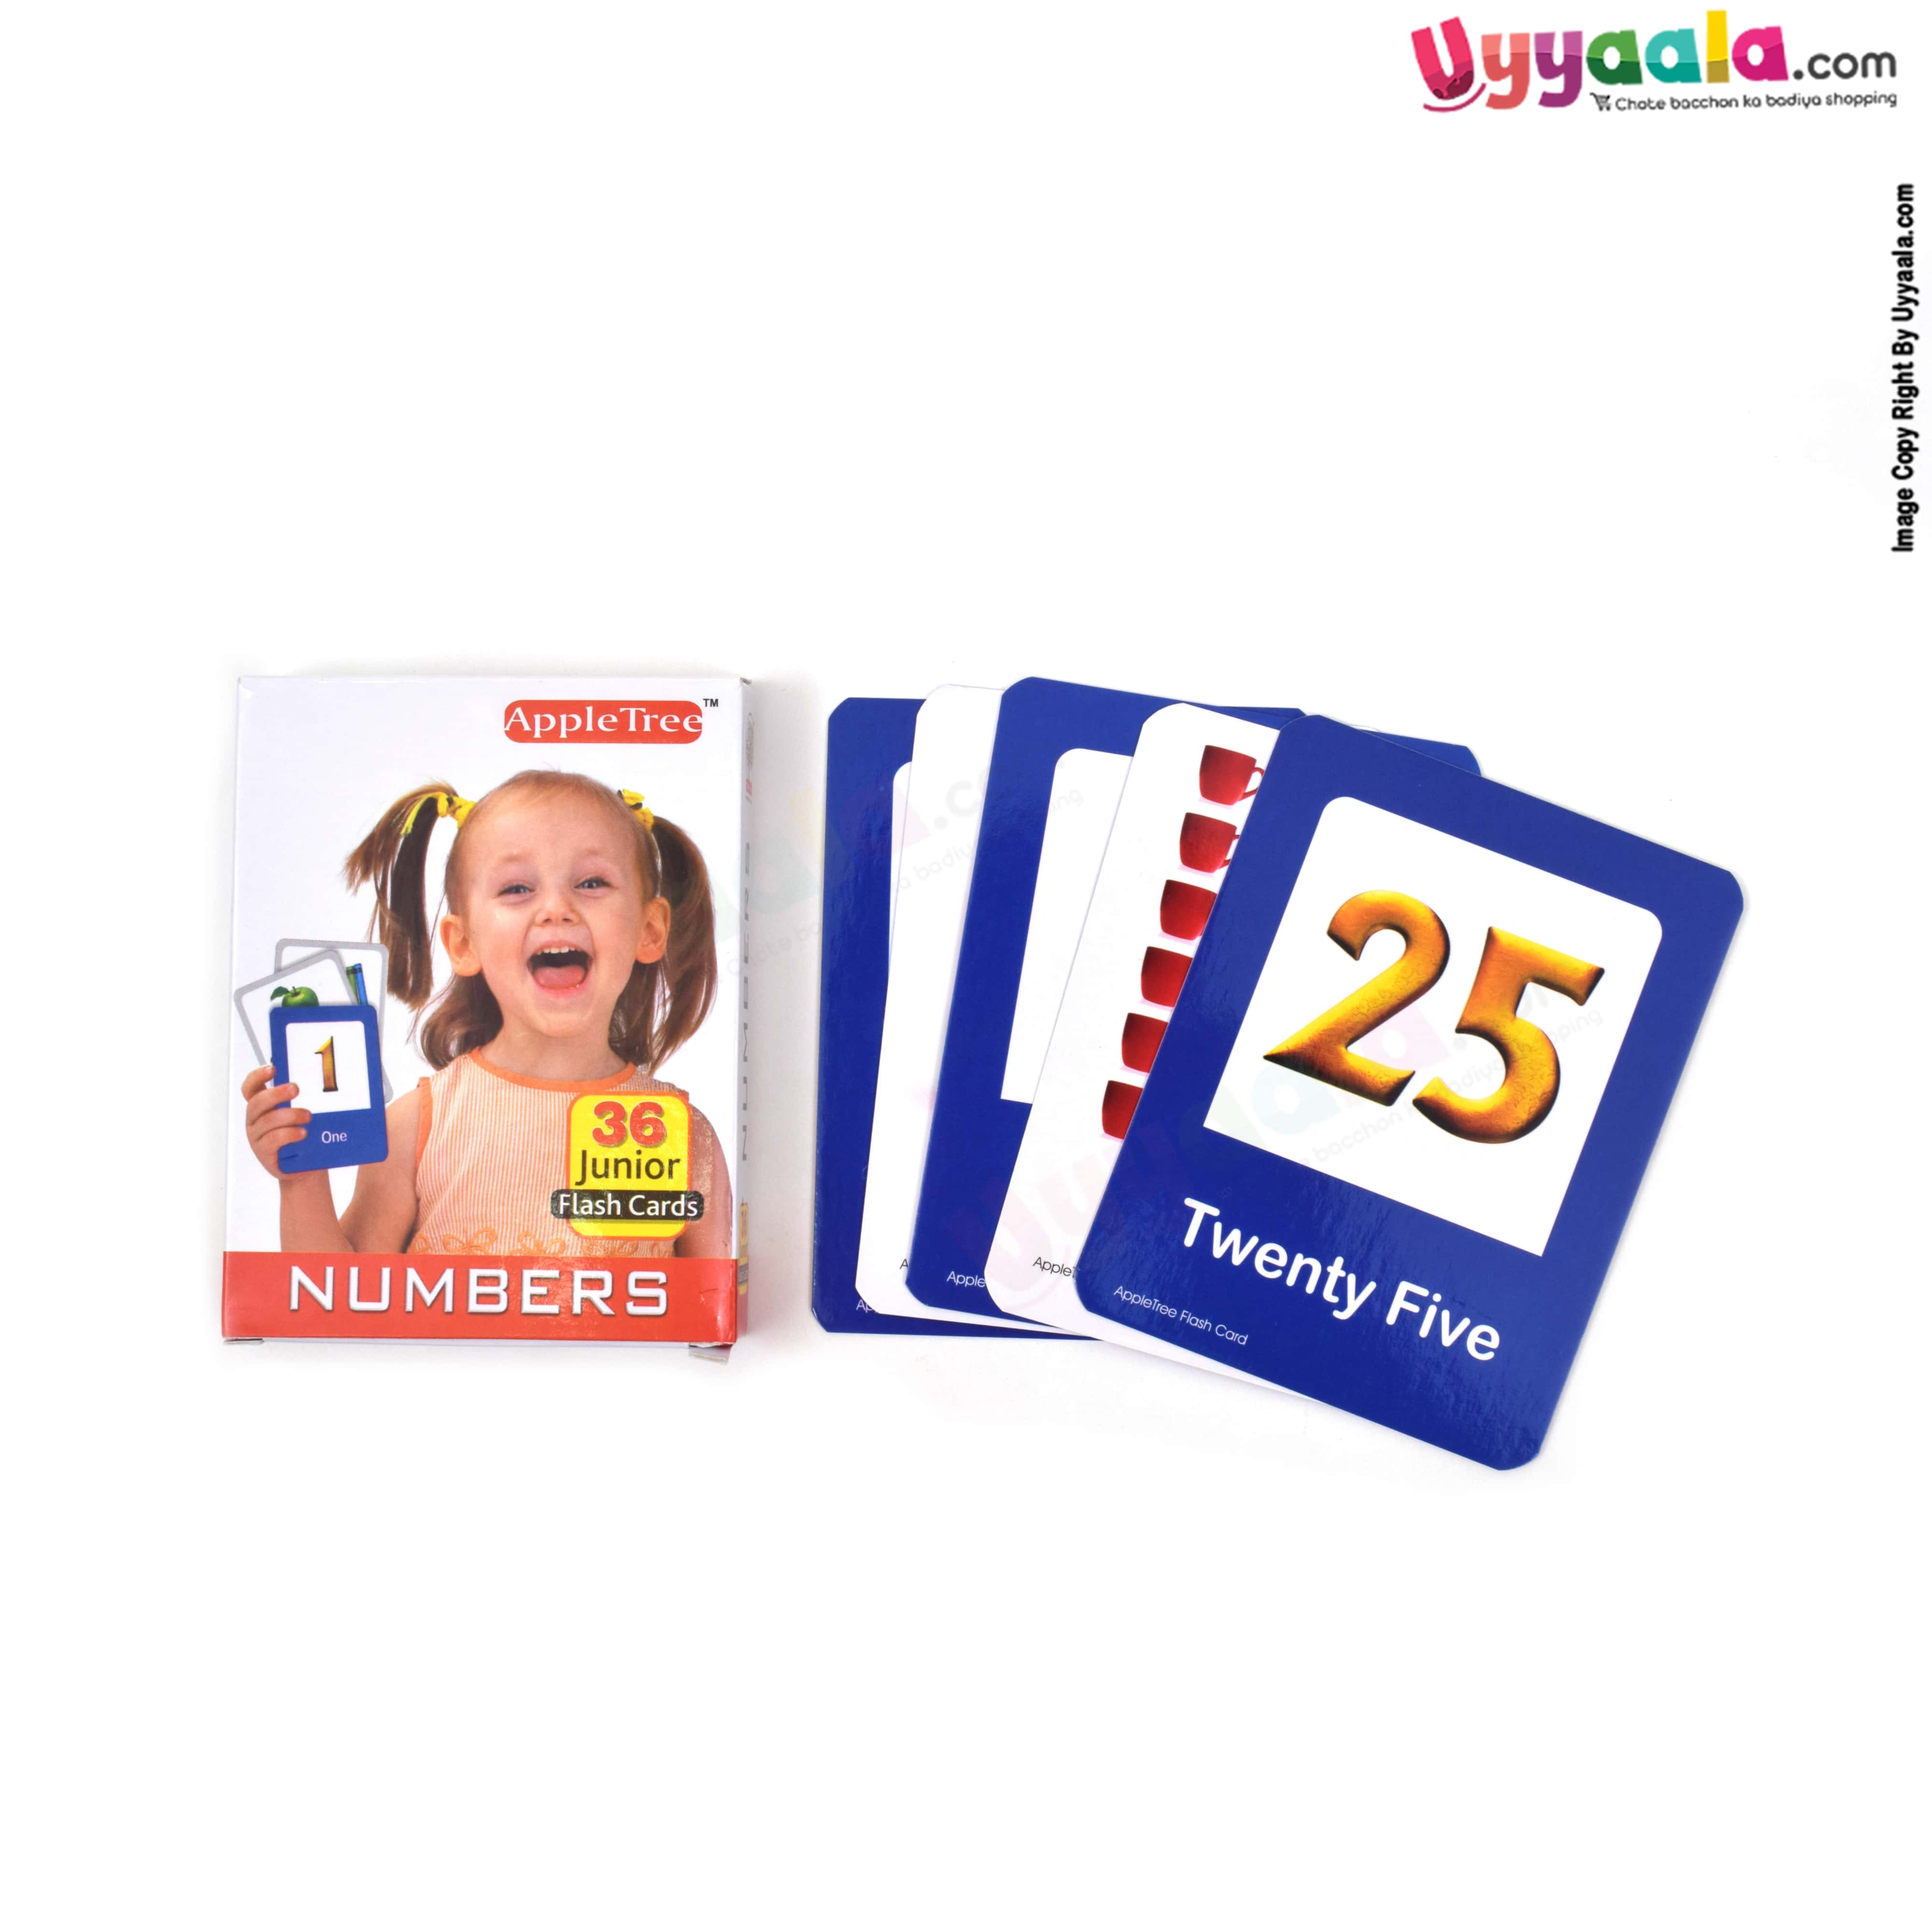 APPLE TREE junior flash cards - numbers